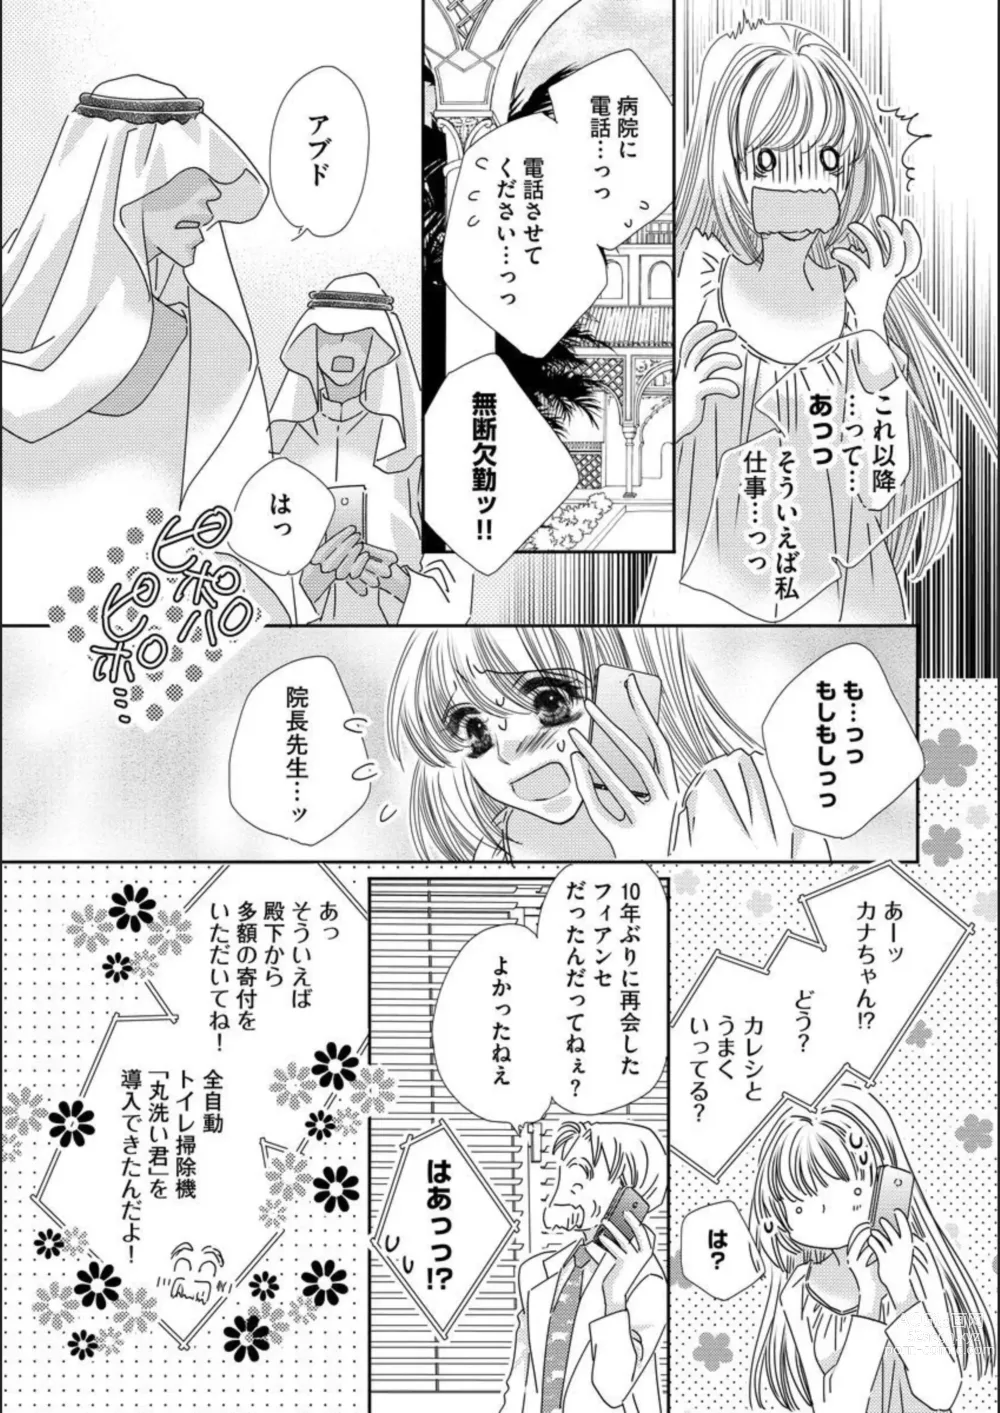 Page 17 of manga Ore-sama Seek no Hanayome Dorei 1